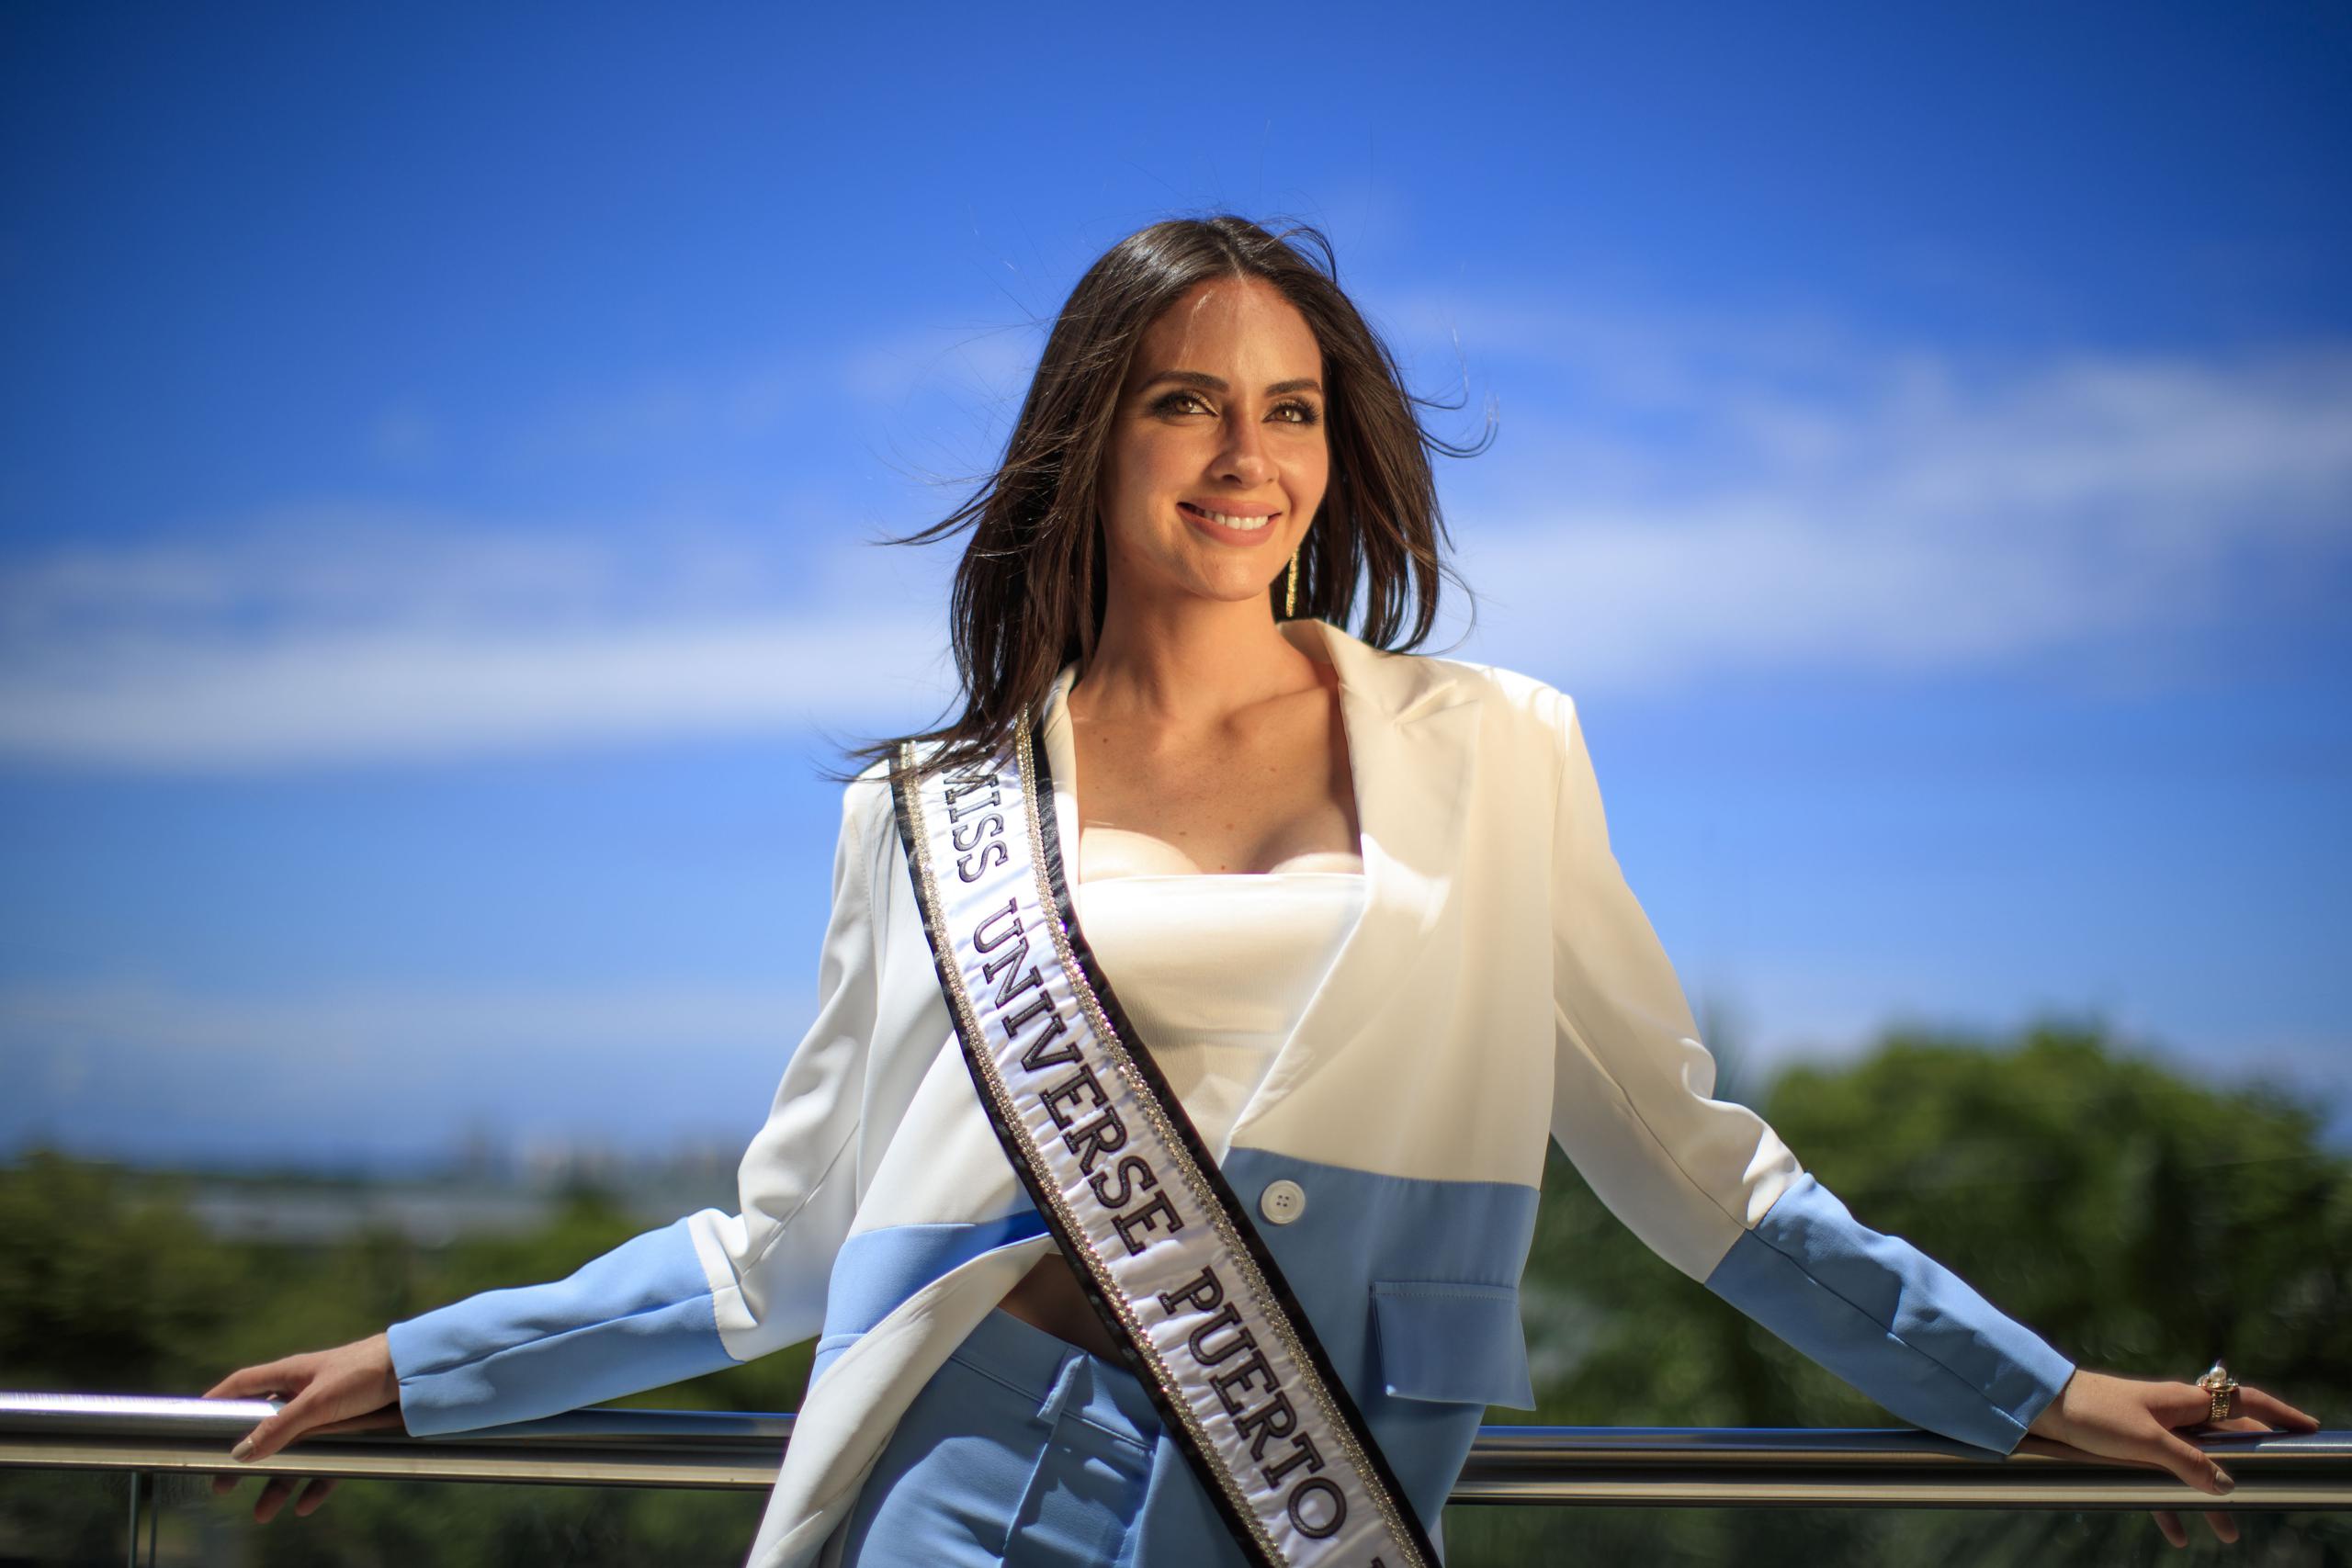 Estefanía Soto, Miss Universe Puerto Rico 2020